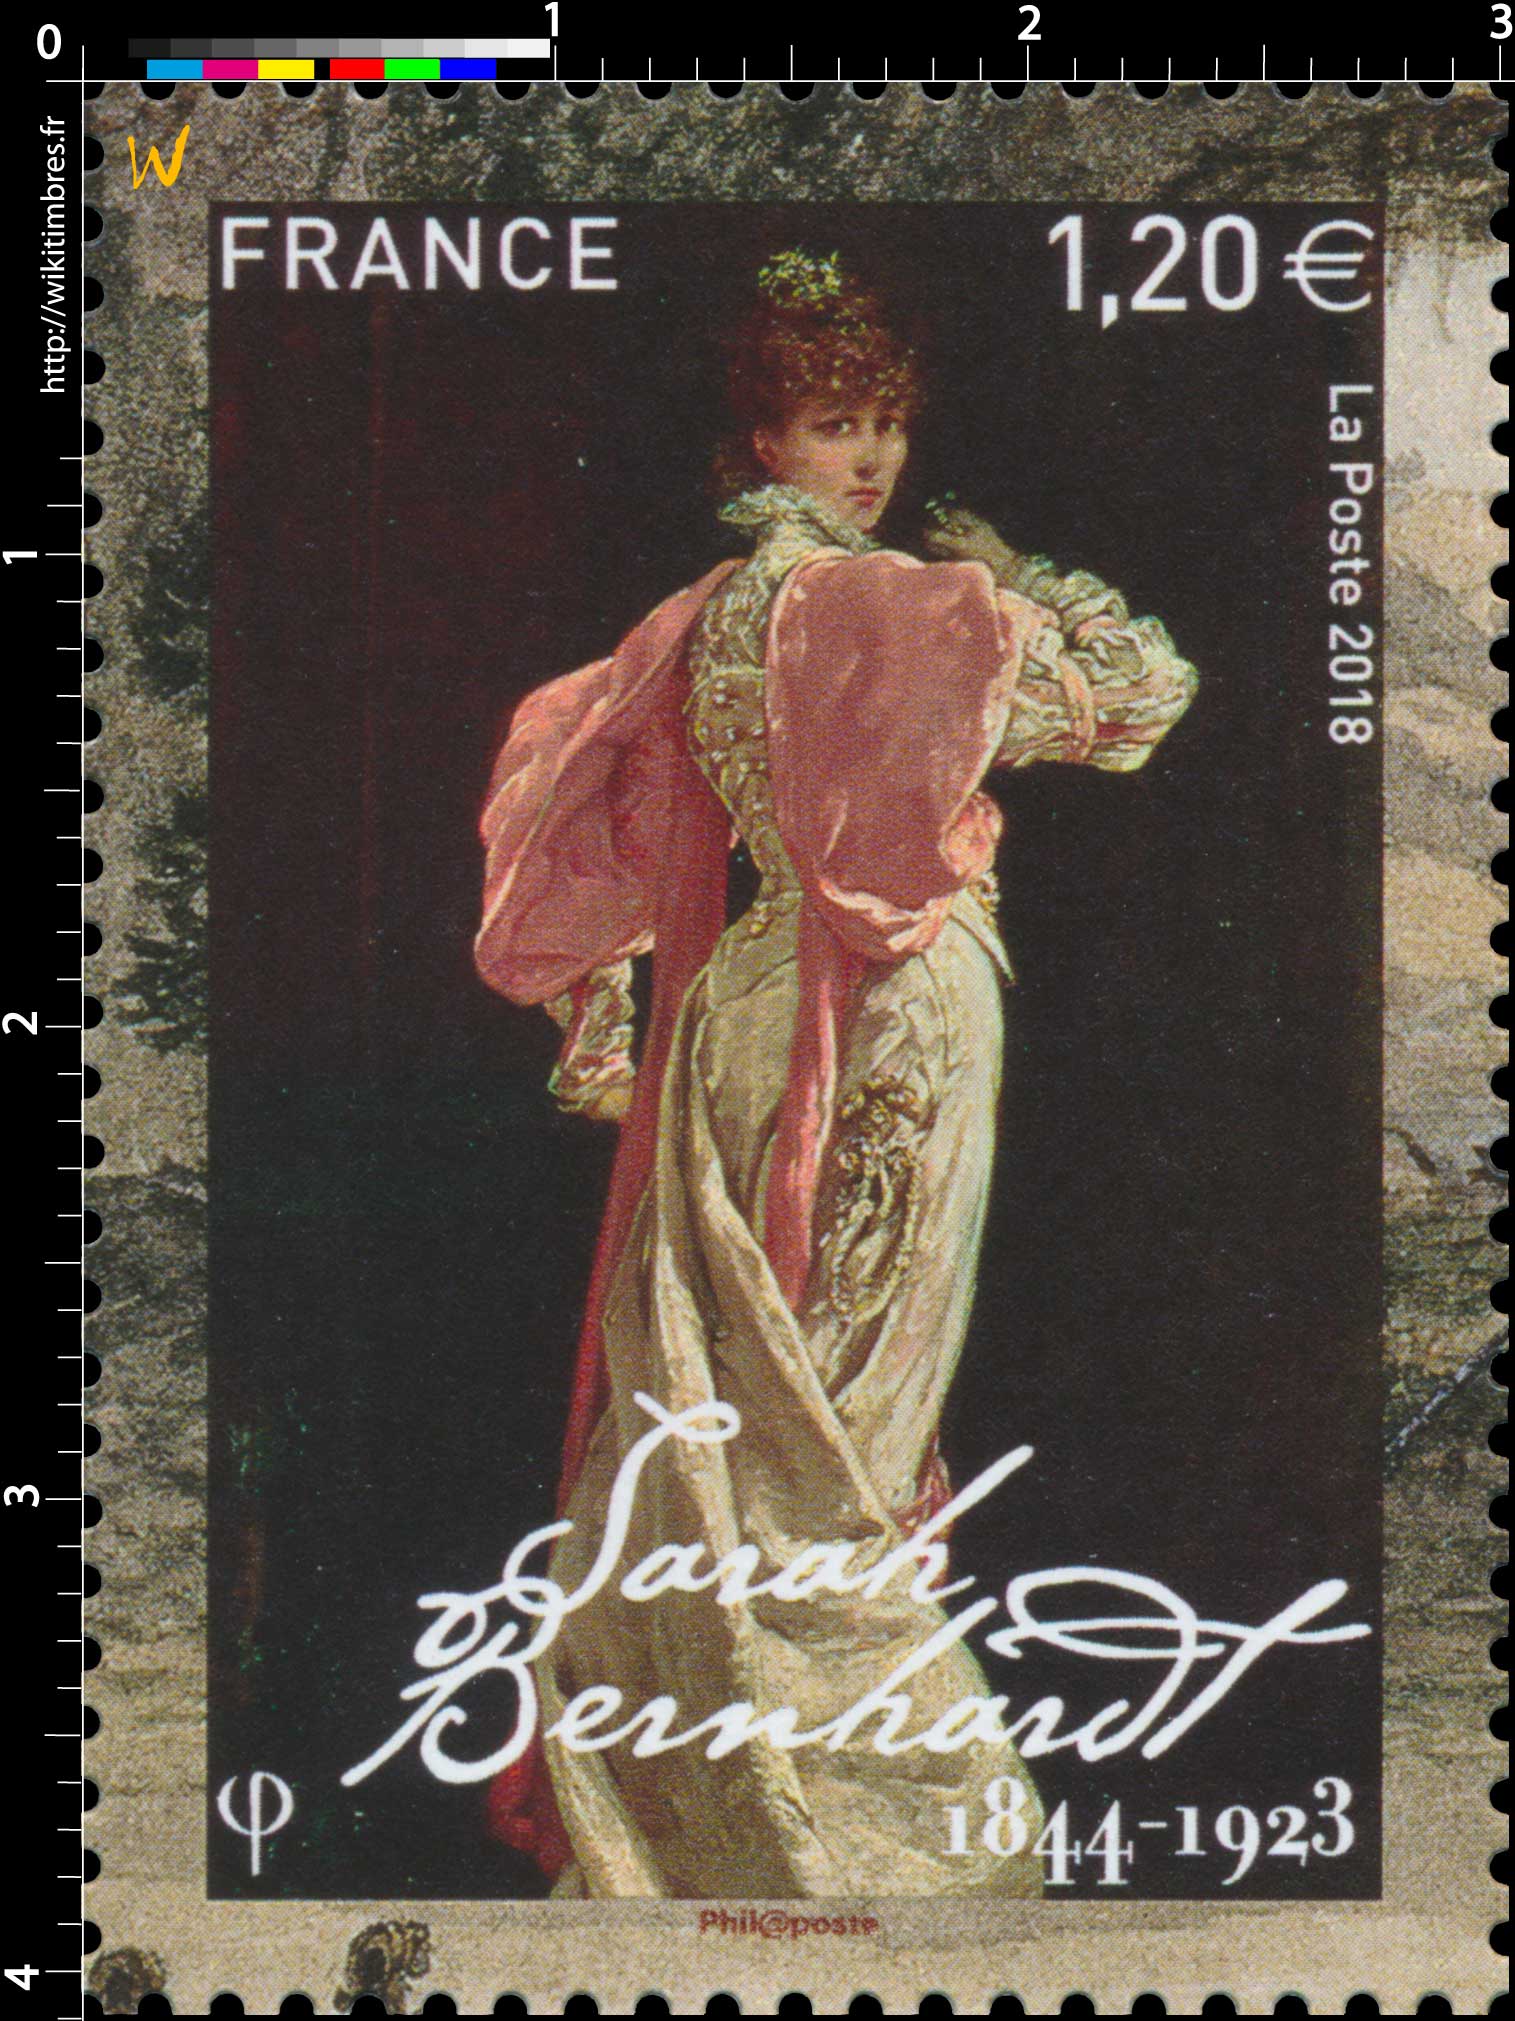 2018 Sarah Bernhardt 1844 - 1923